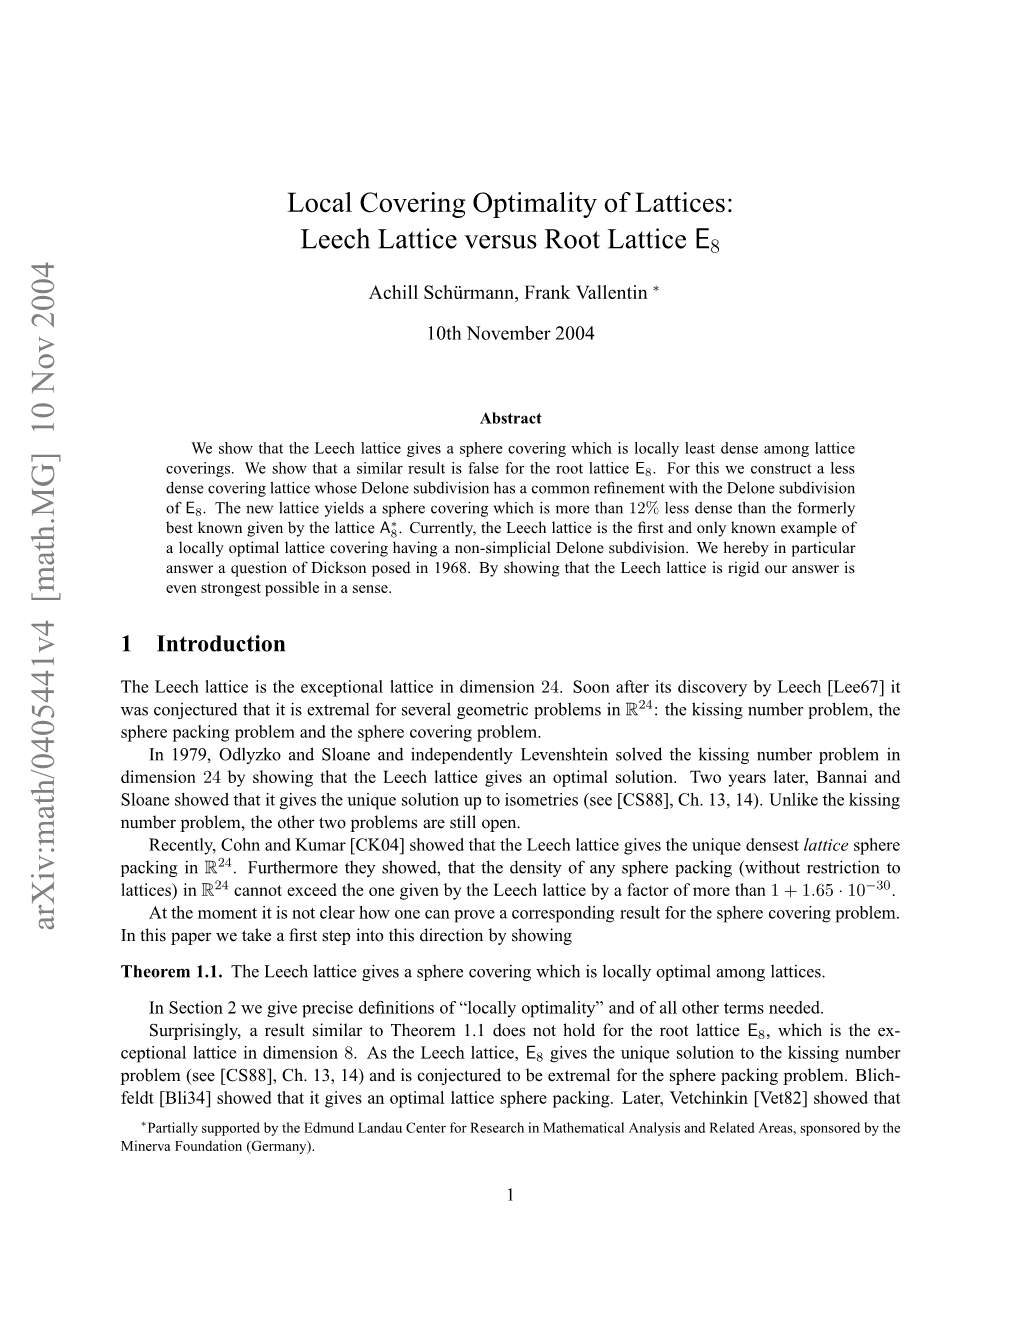 Local Covering Optimality of Lattices: Leech Lattice Versus Root Lattice E8